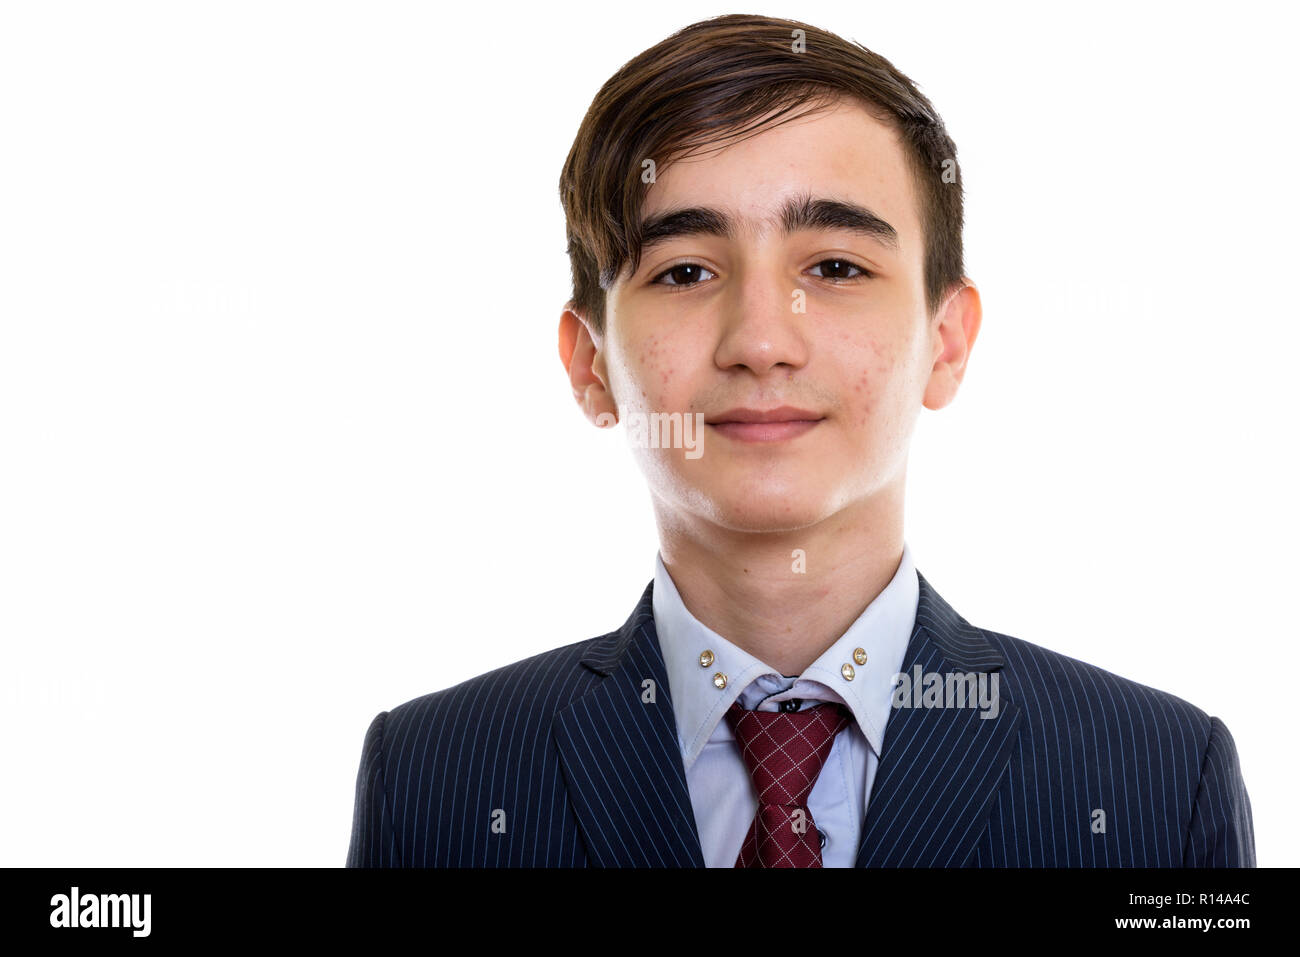 Foto de estudio de joven apuesto empresario adolescente persa Foto de stock